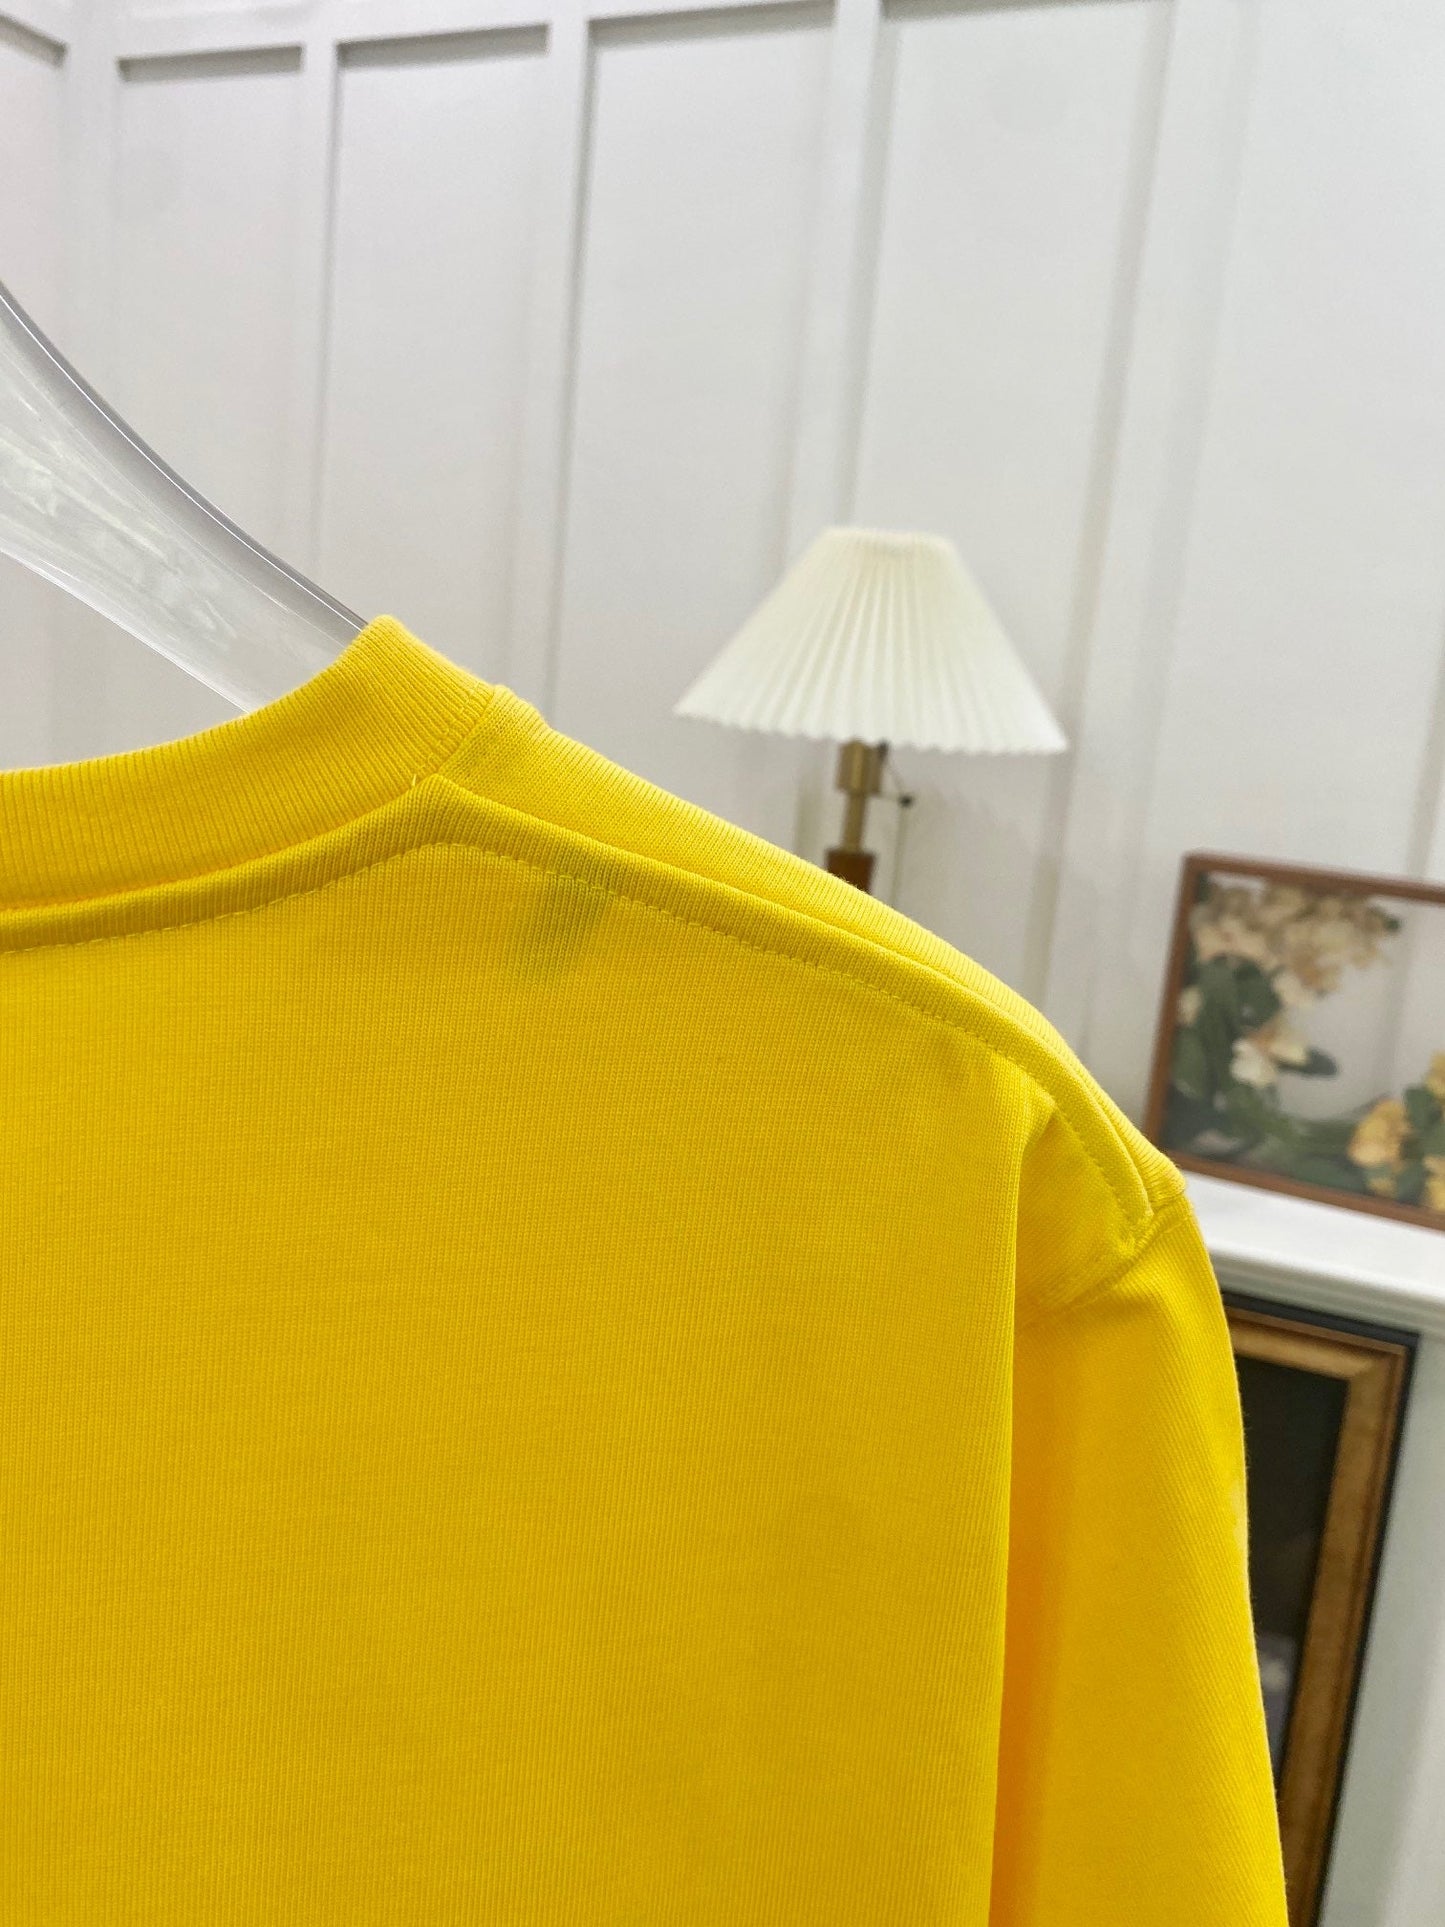 Yellow T-Shirt - Size M